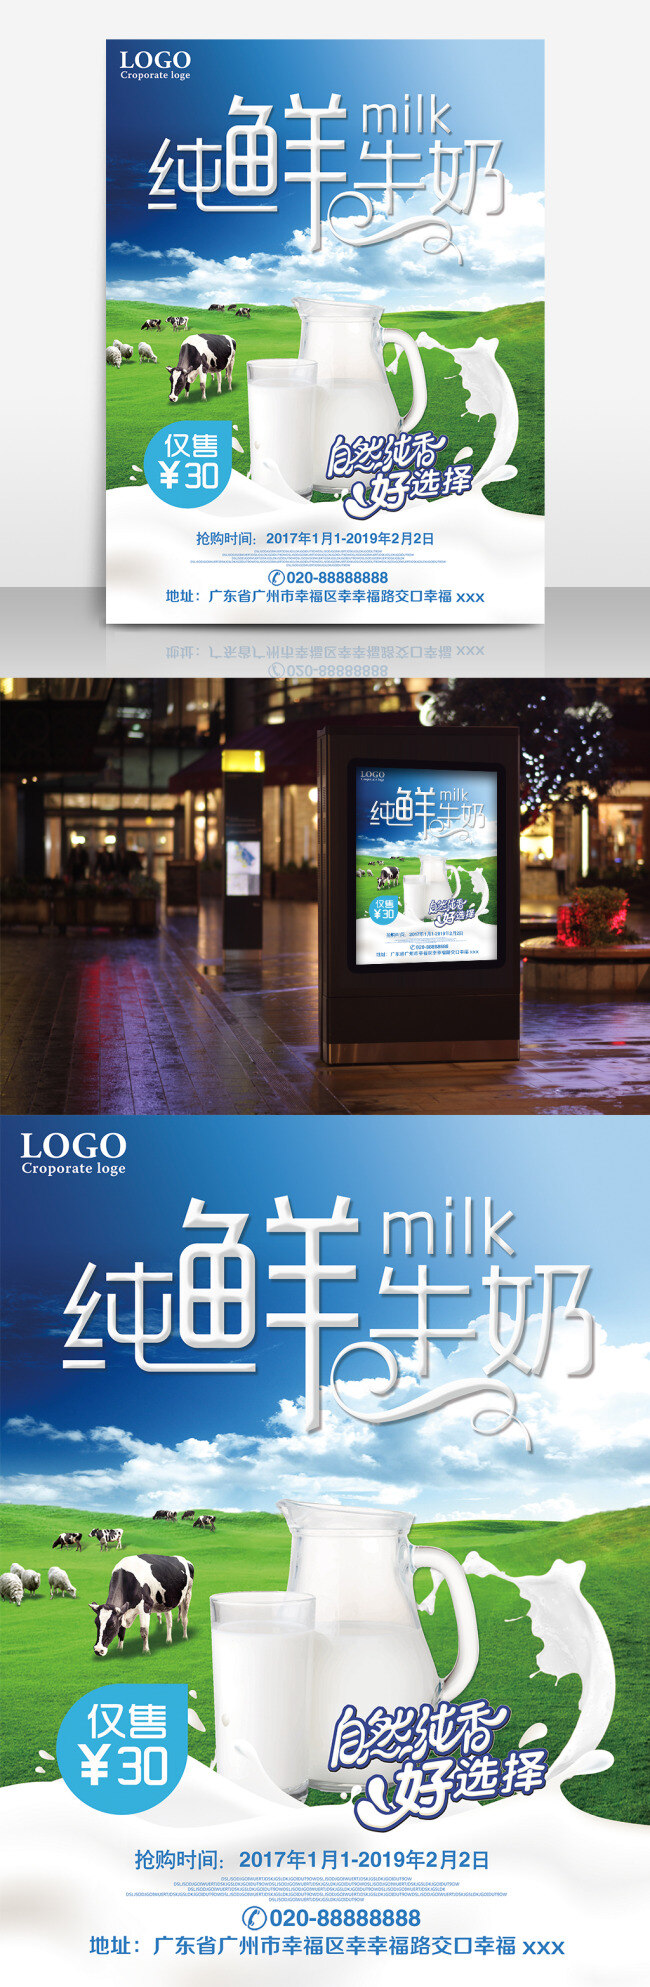 新鲜 牛奶 海报 宣传 羊奶 牛奶海报 牛奶广告 牛奶展板 牛奶农场 新鲜牛奶 牛奶早餐 奶农 光明牛奶 伊利牛奶 鲜奶 有机农场 草原奶牛 奶粉 纯牛奶